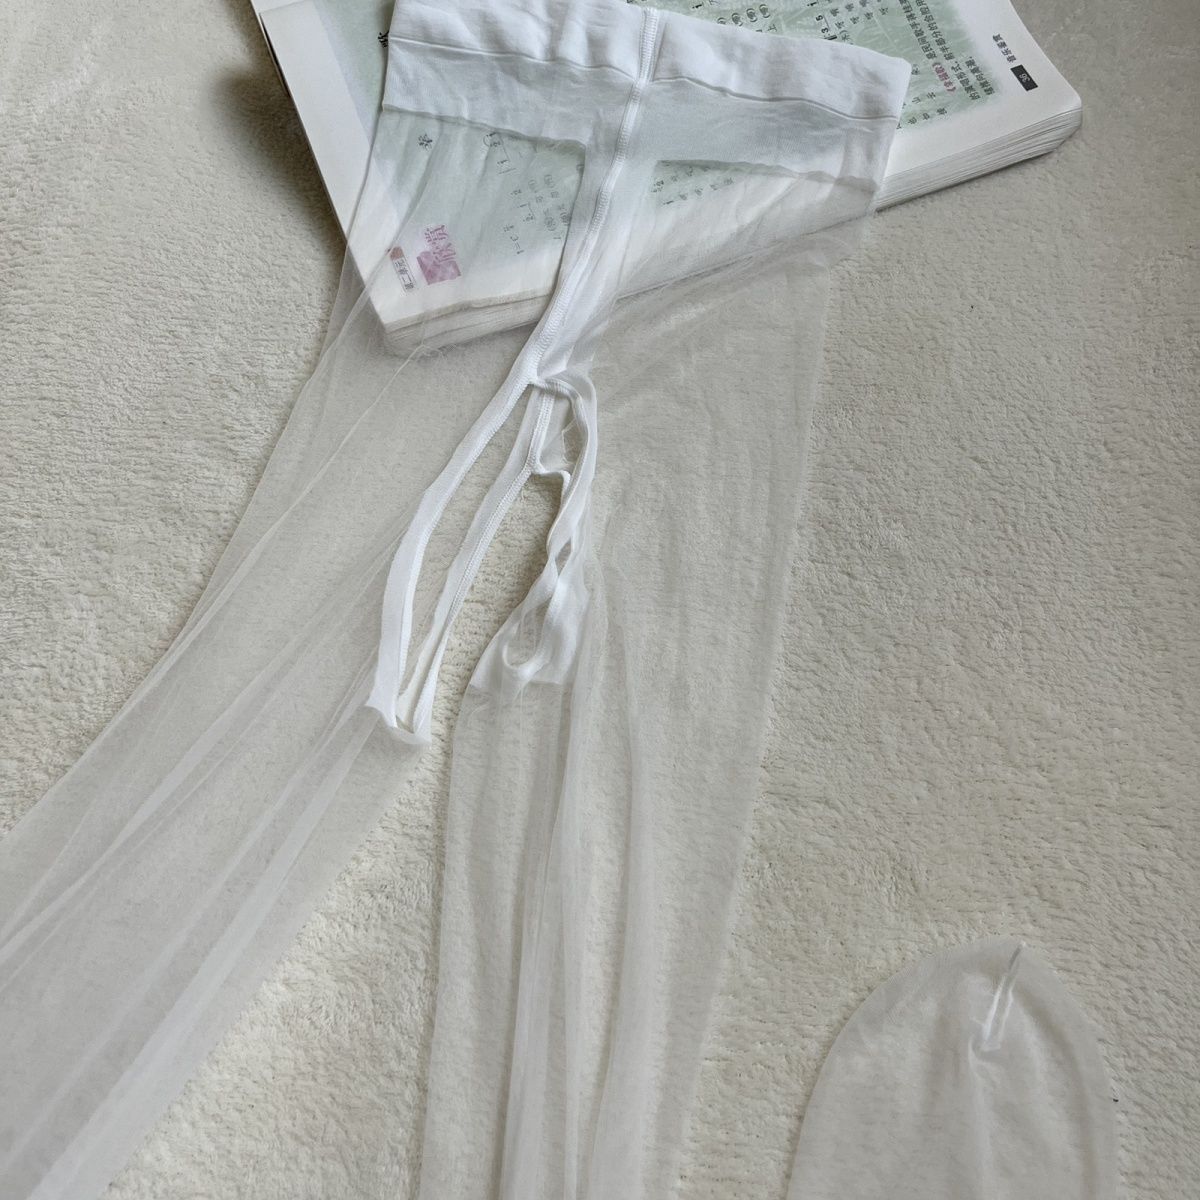 0.1D超级薄高密冰丝超丝滑细腻舒适丝袜透明隐形无痕脚尖透明丝袜-图2